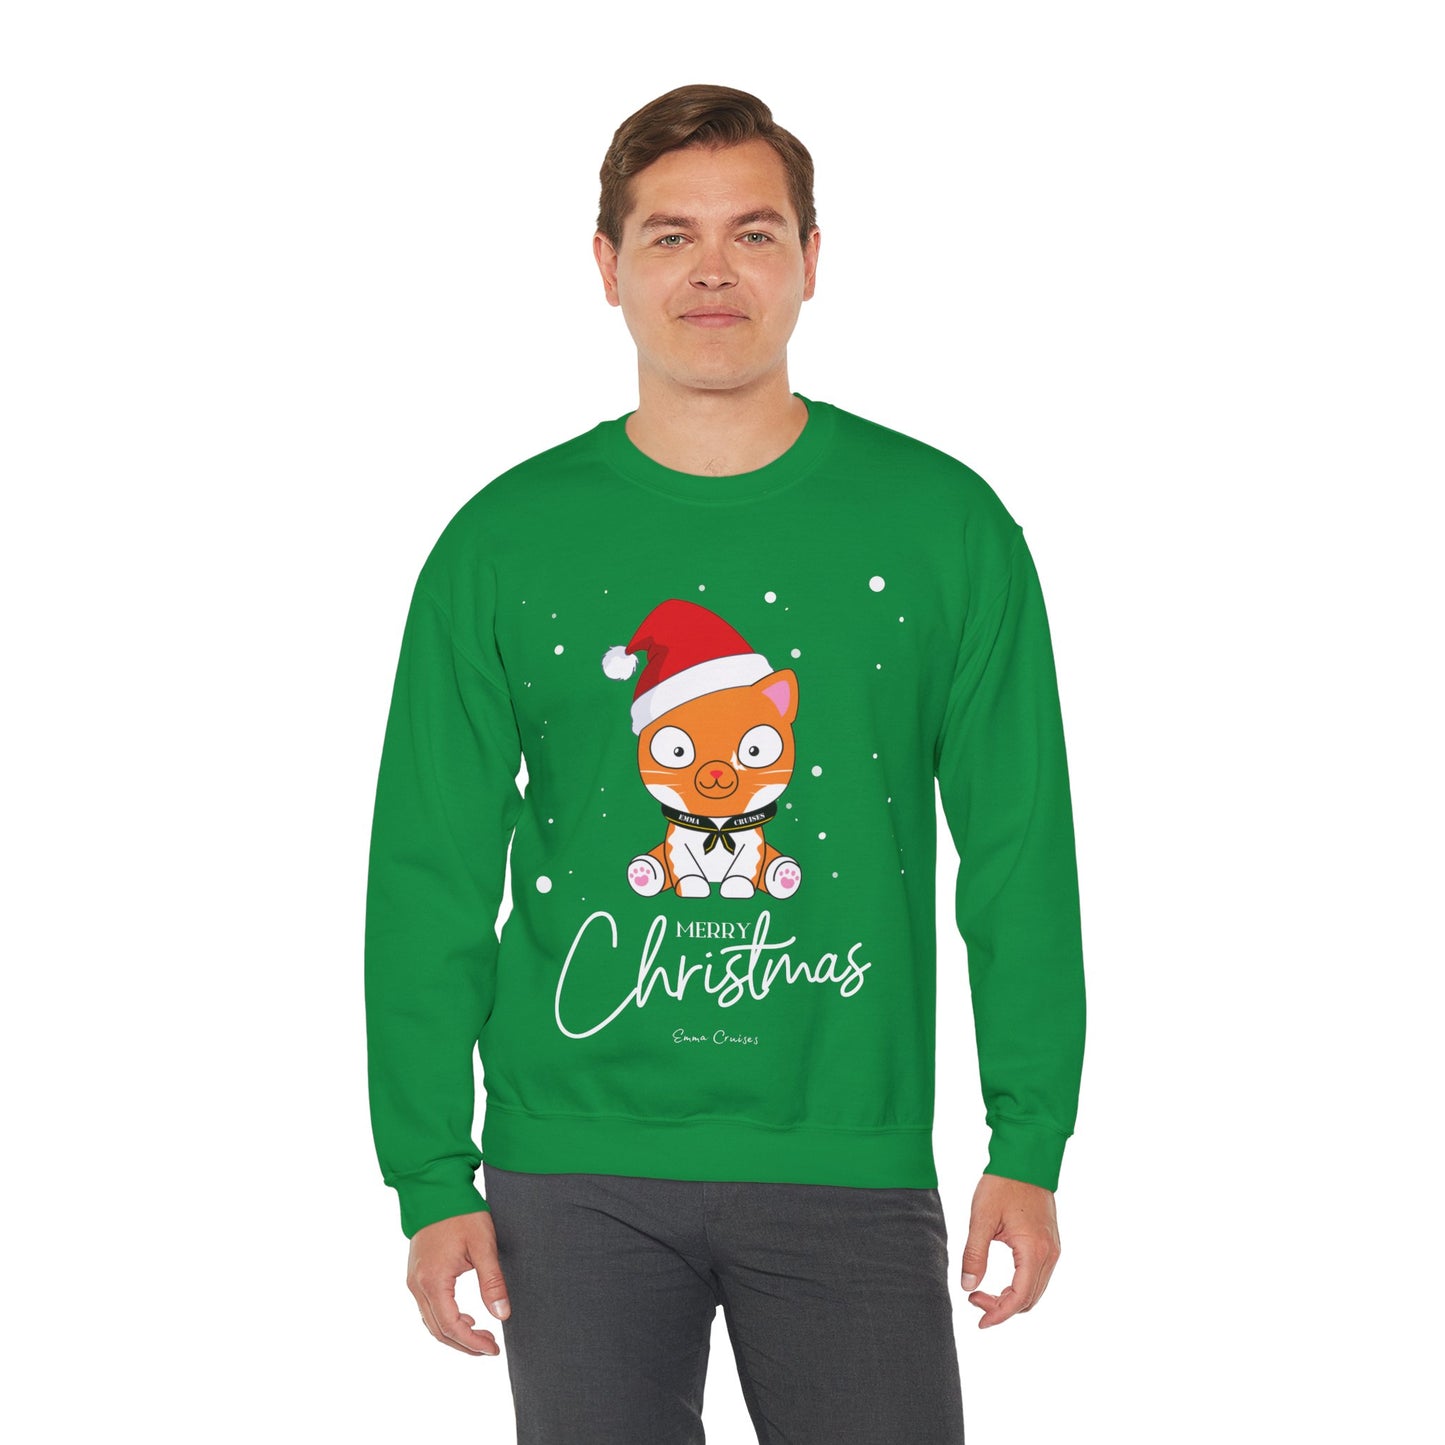 Merry Christmas - UNISEX Crewneck Sweatshirt